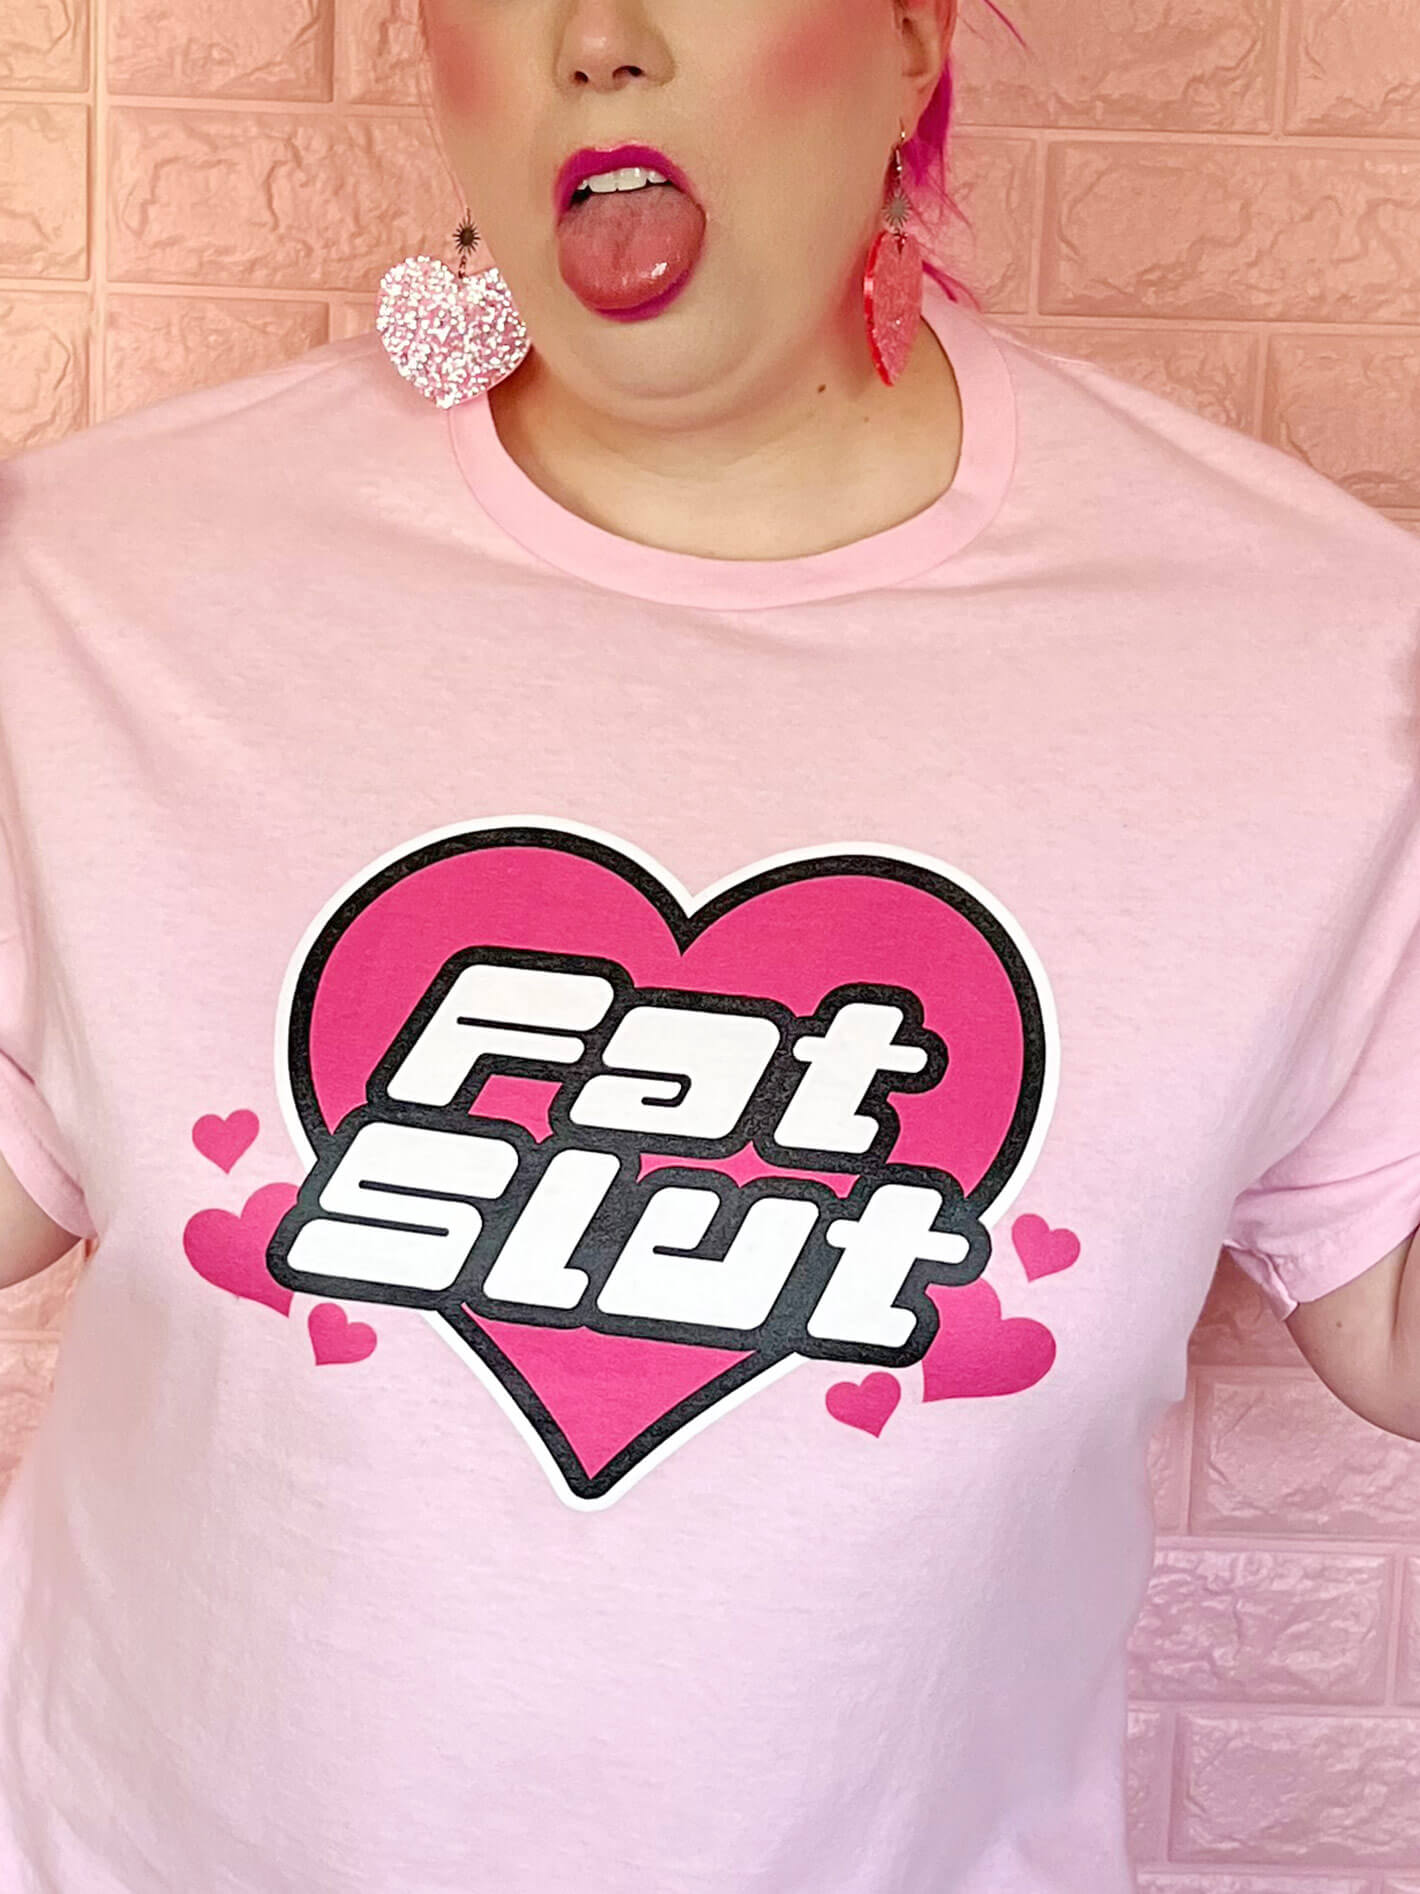 Plus size pink graphic tee fat slut.